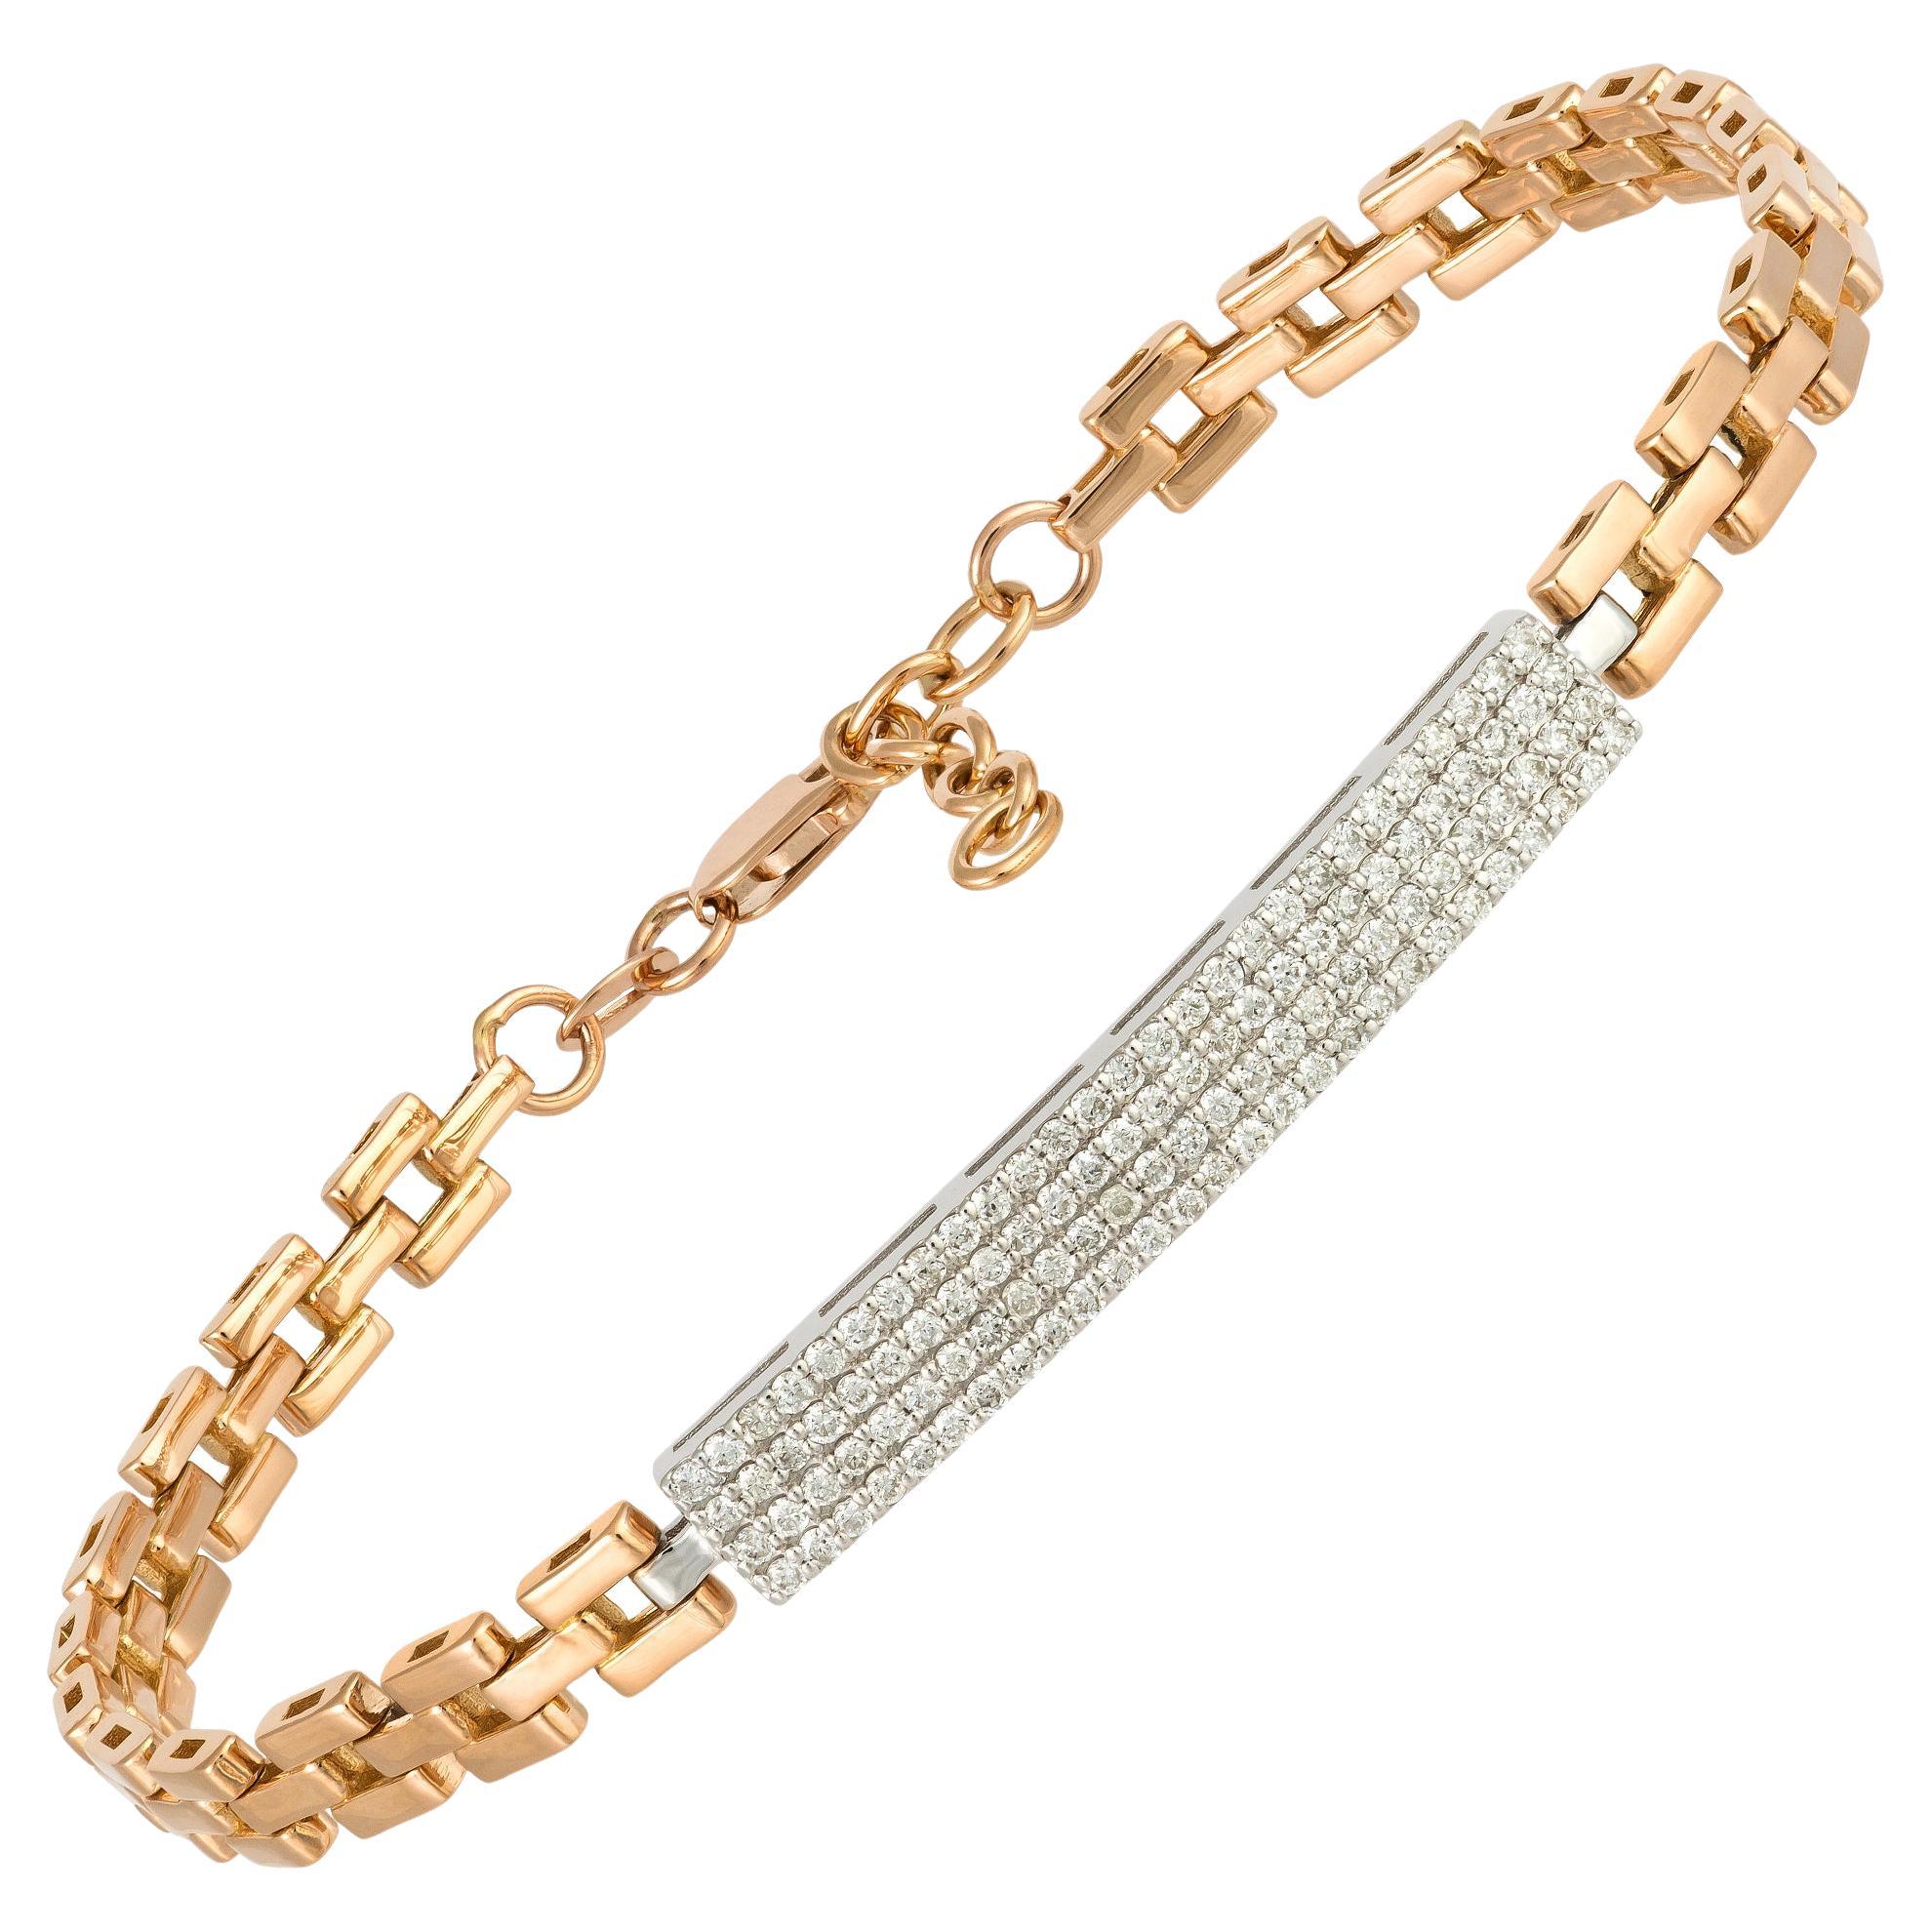 Modern White Yellow Gold 18K Bracelet Diamond for Her